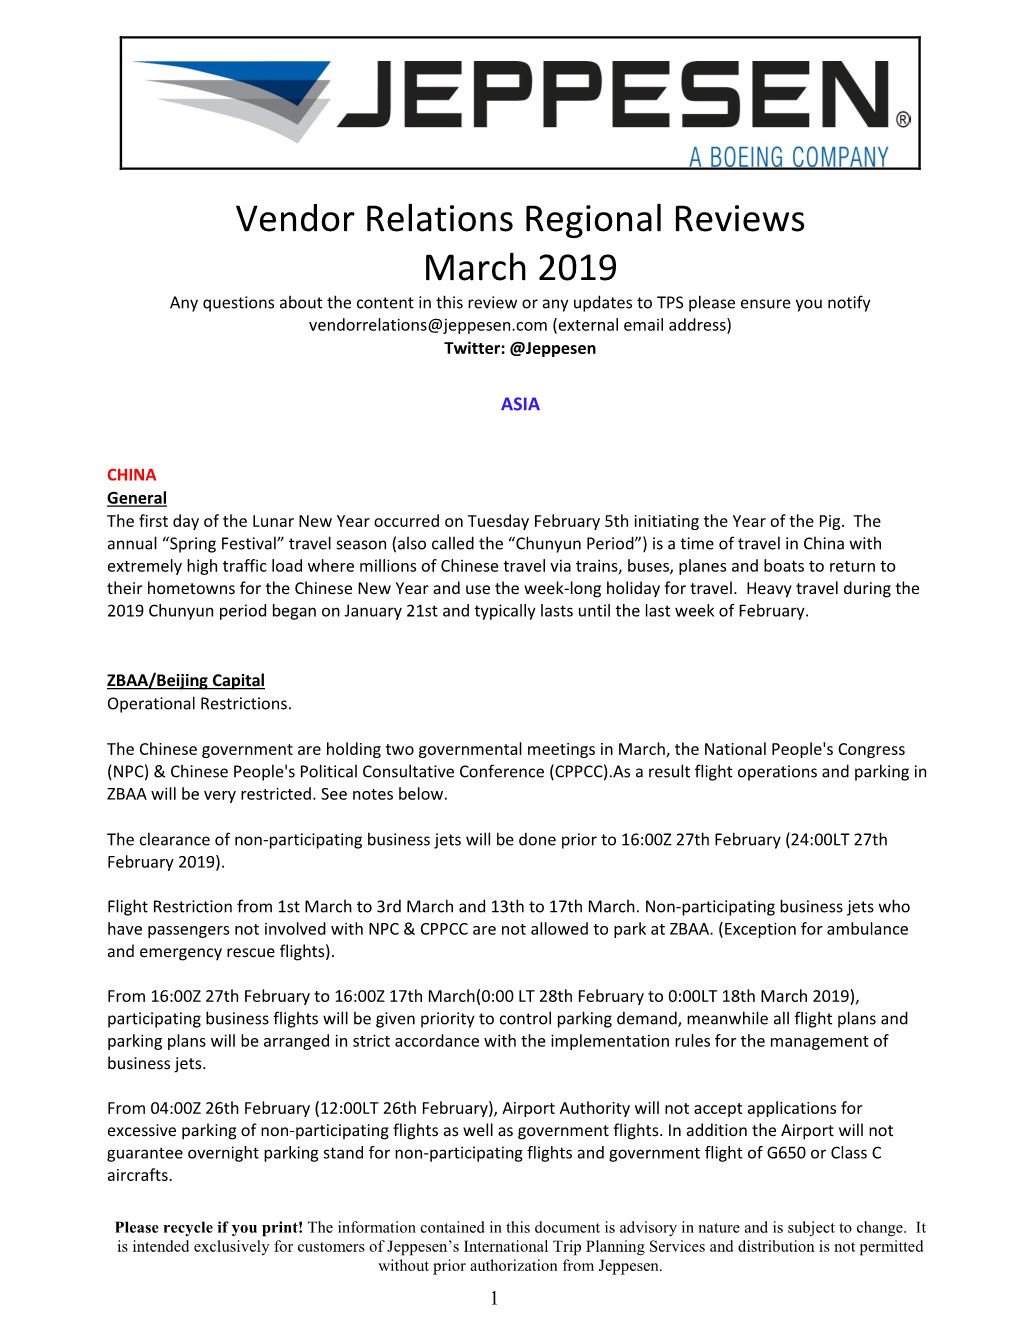 Vendor Relations Regional Reviews March 2019